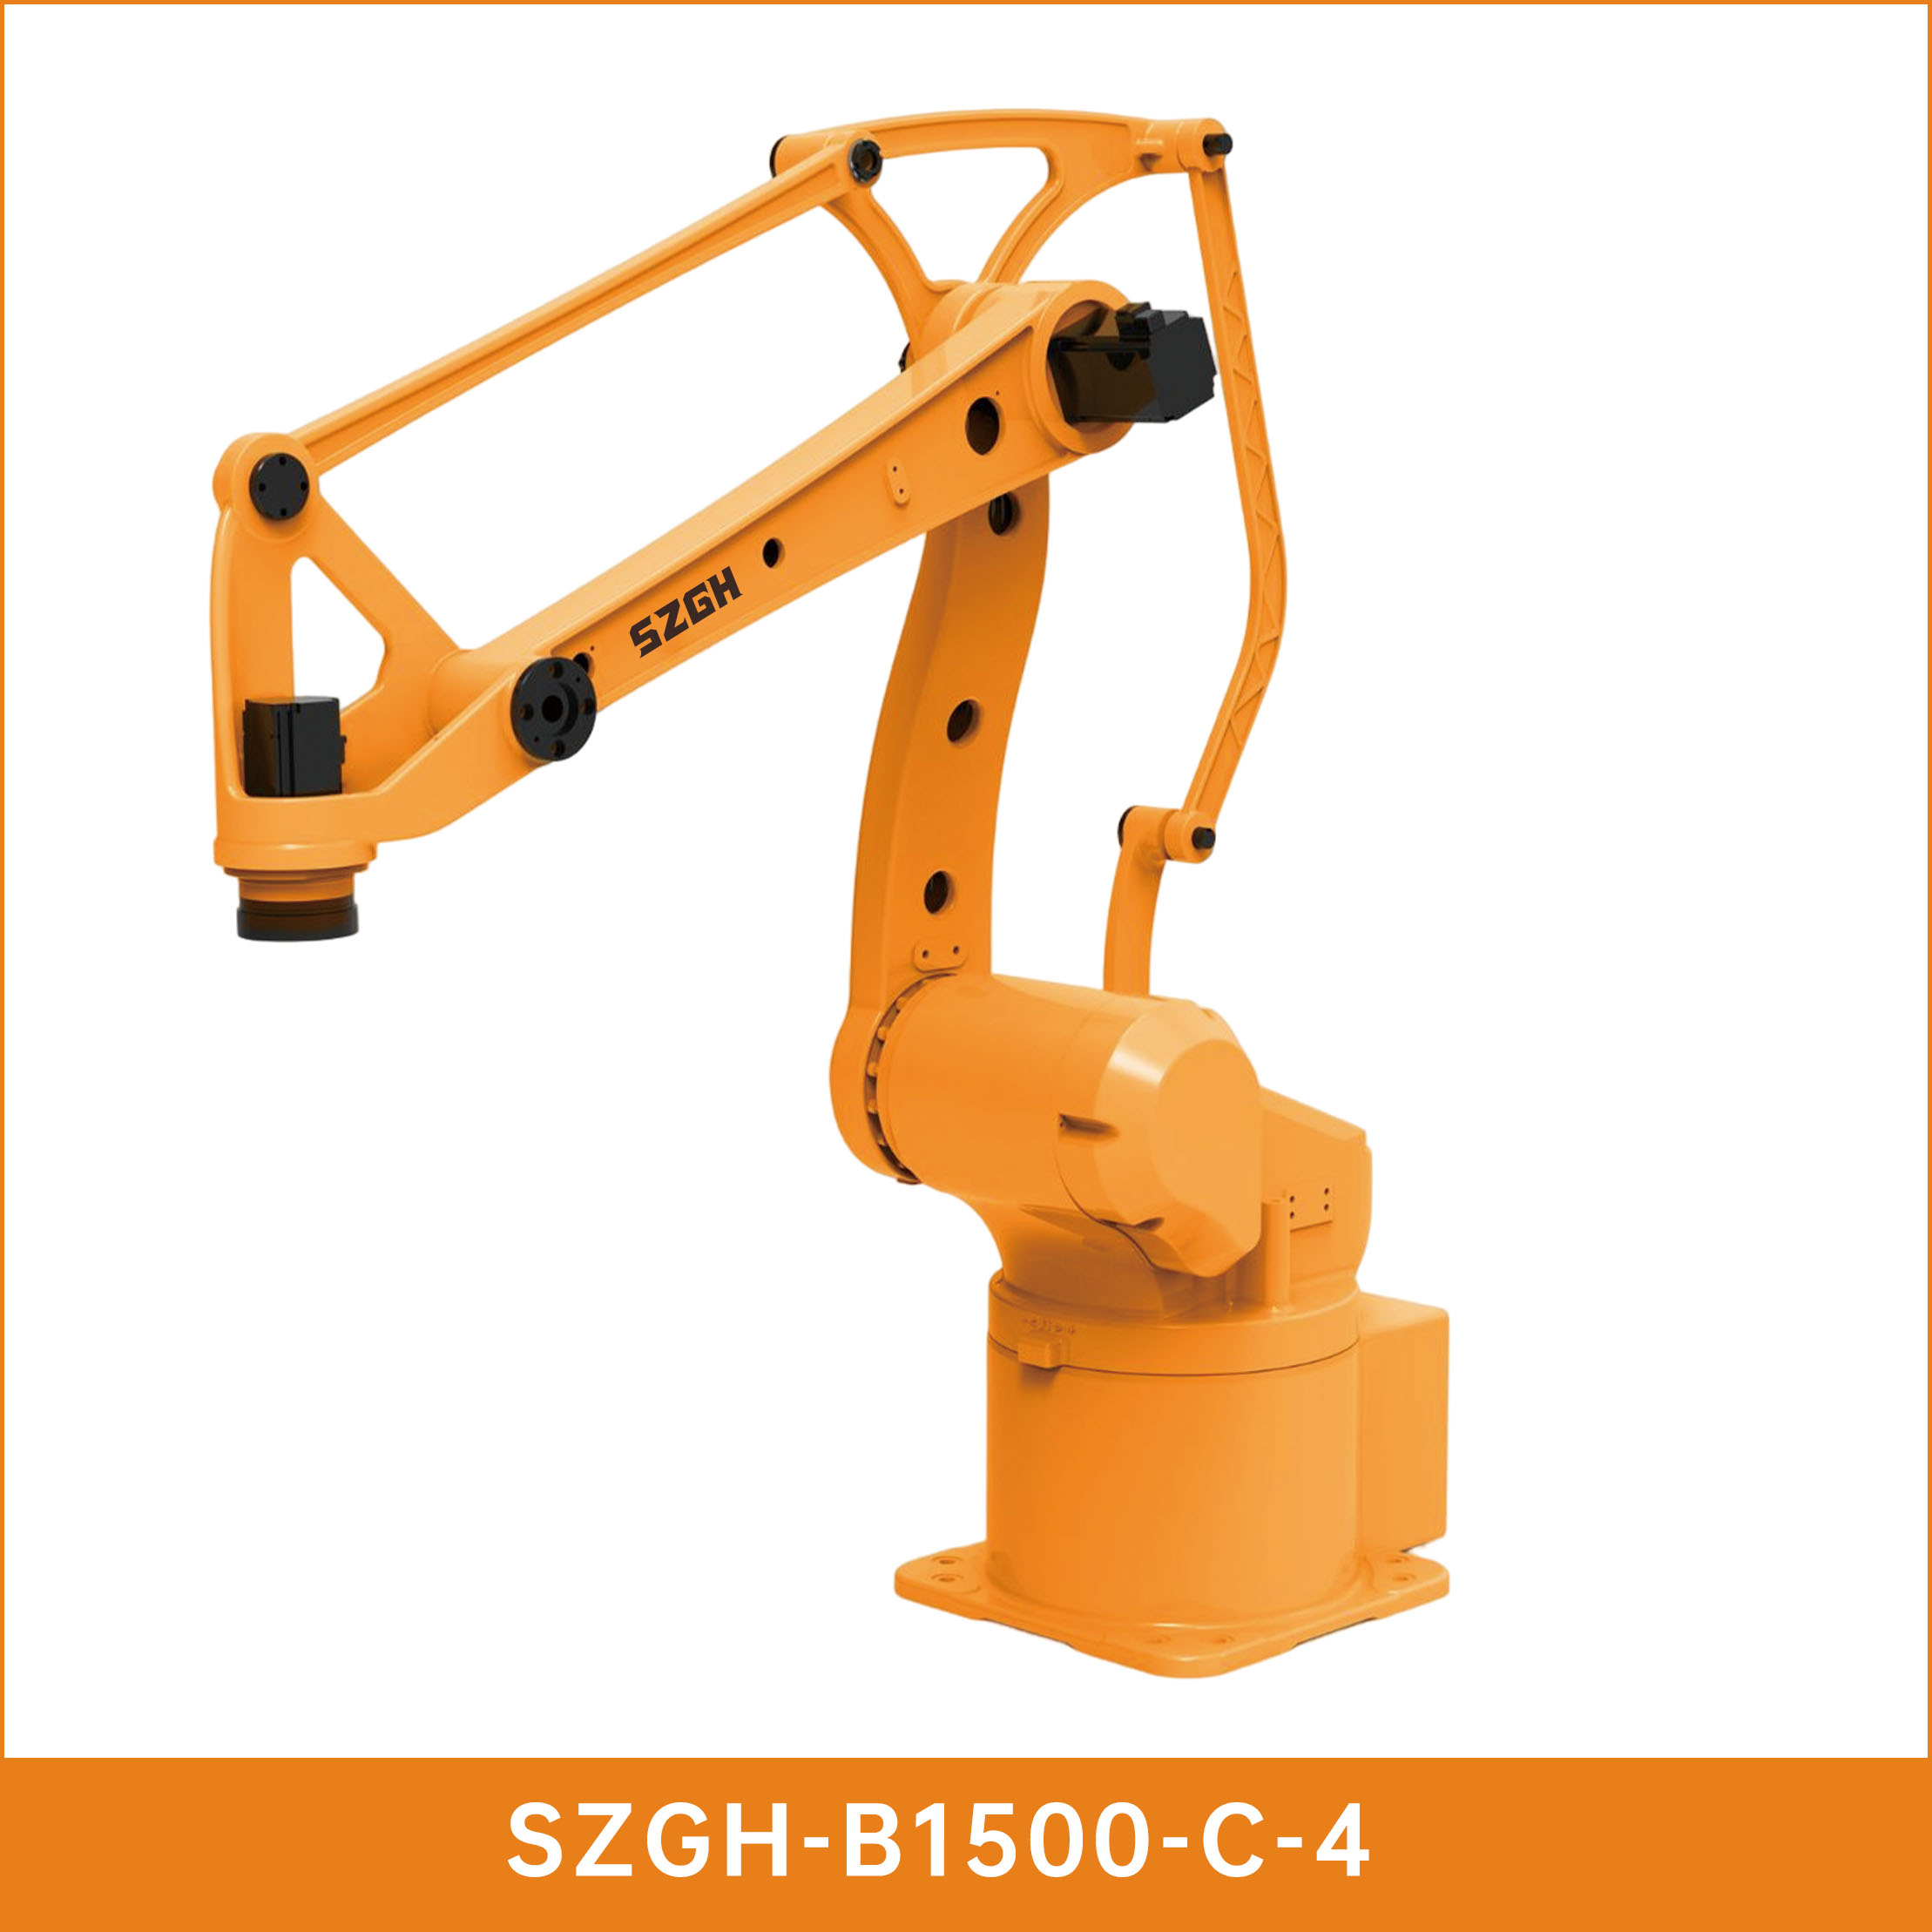 SZGH-B1500-C-4